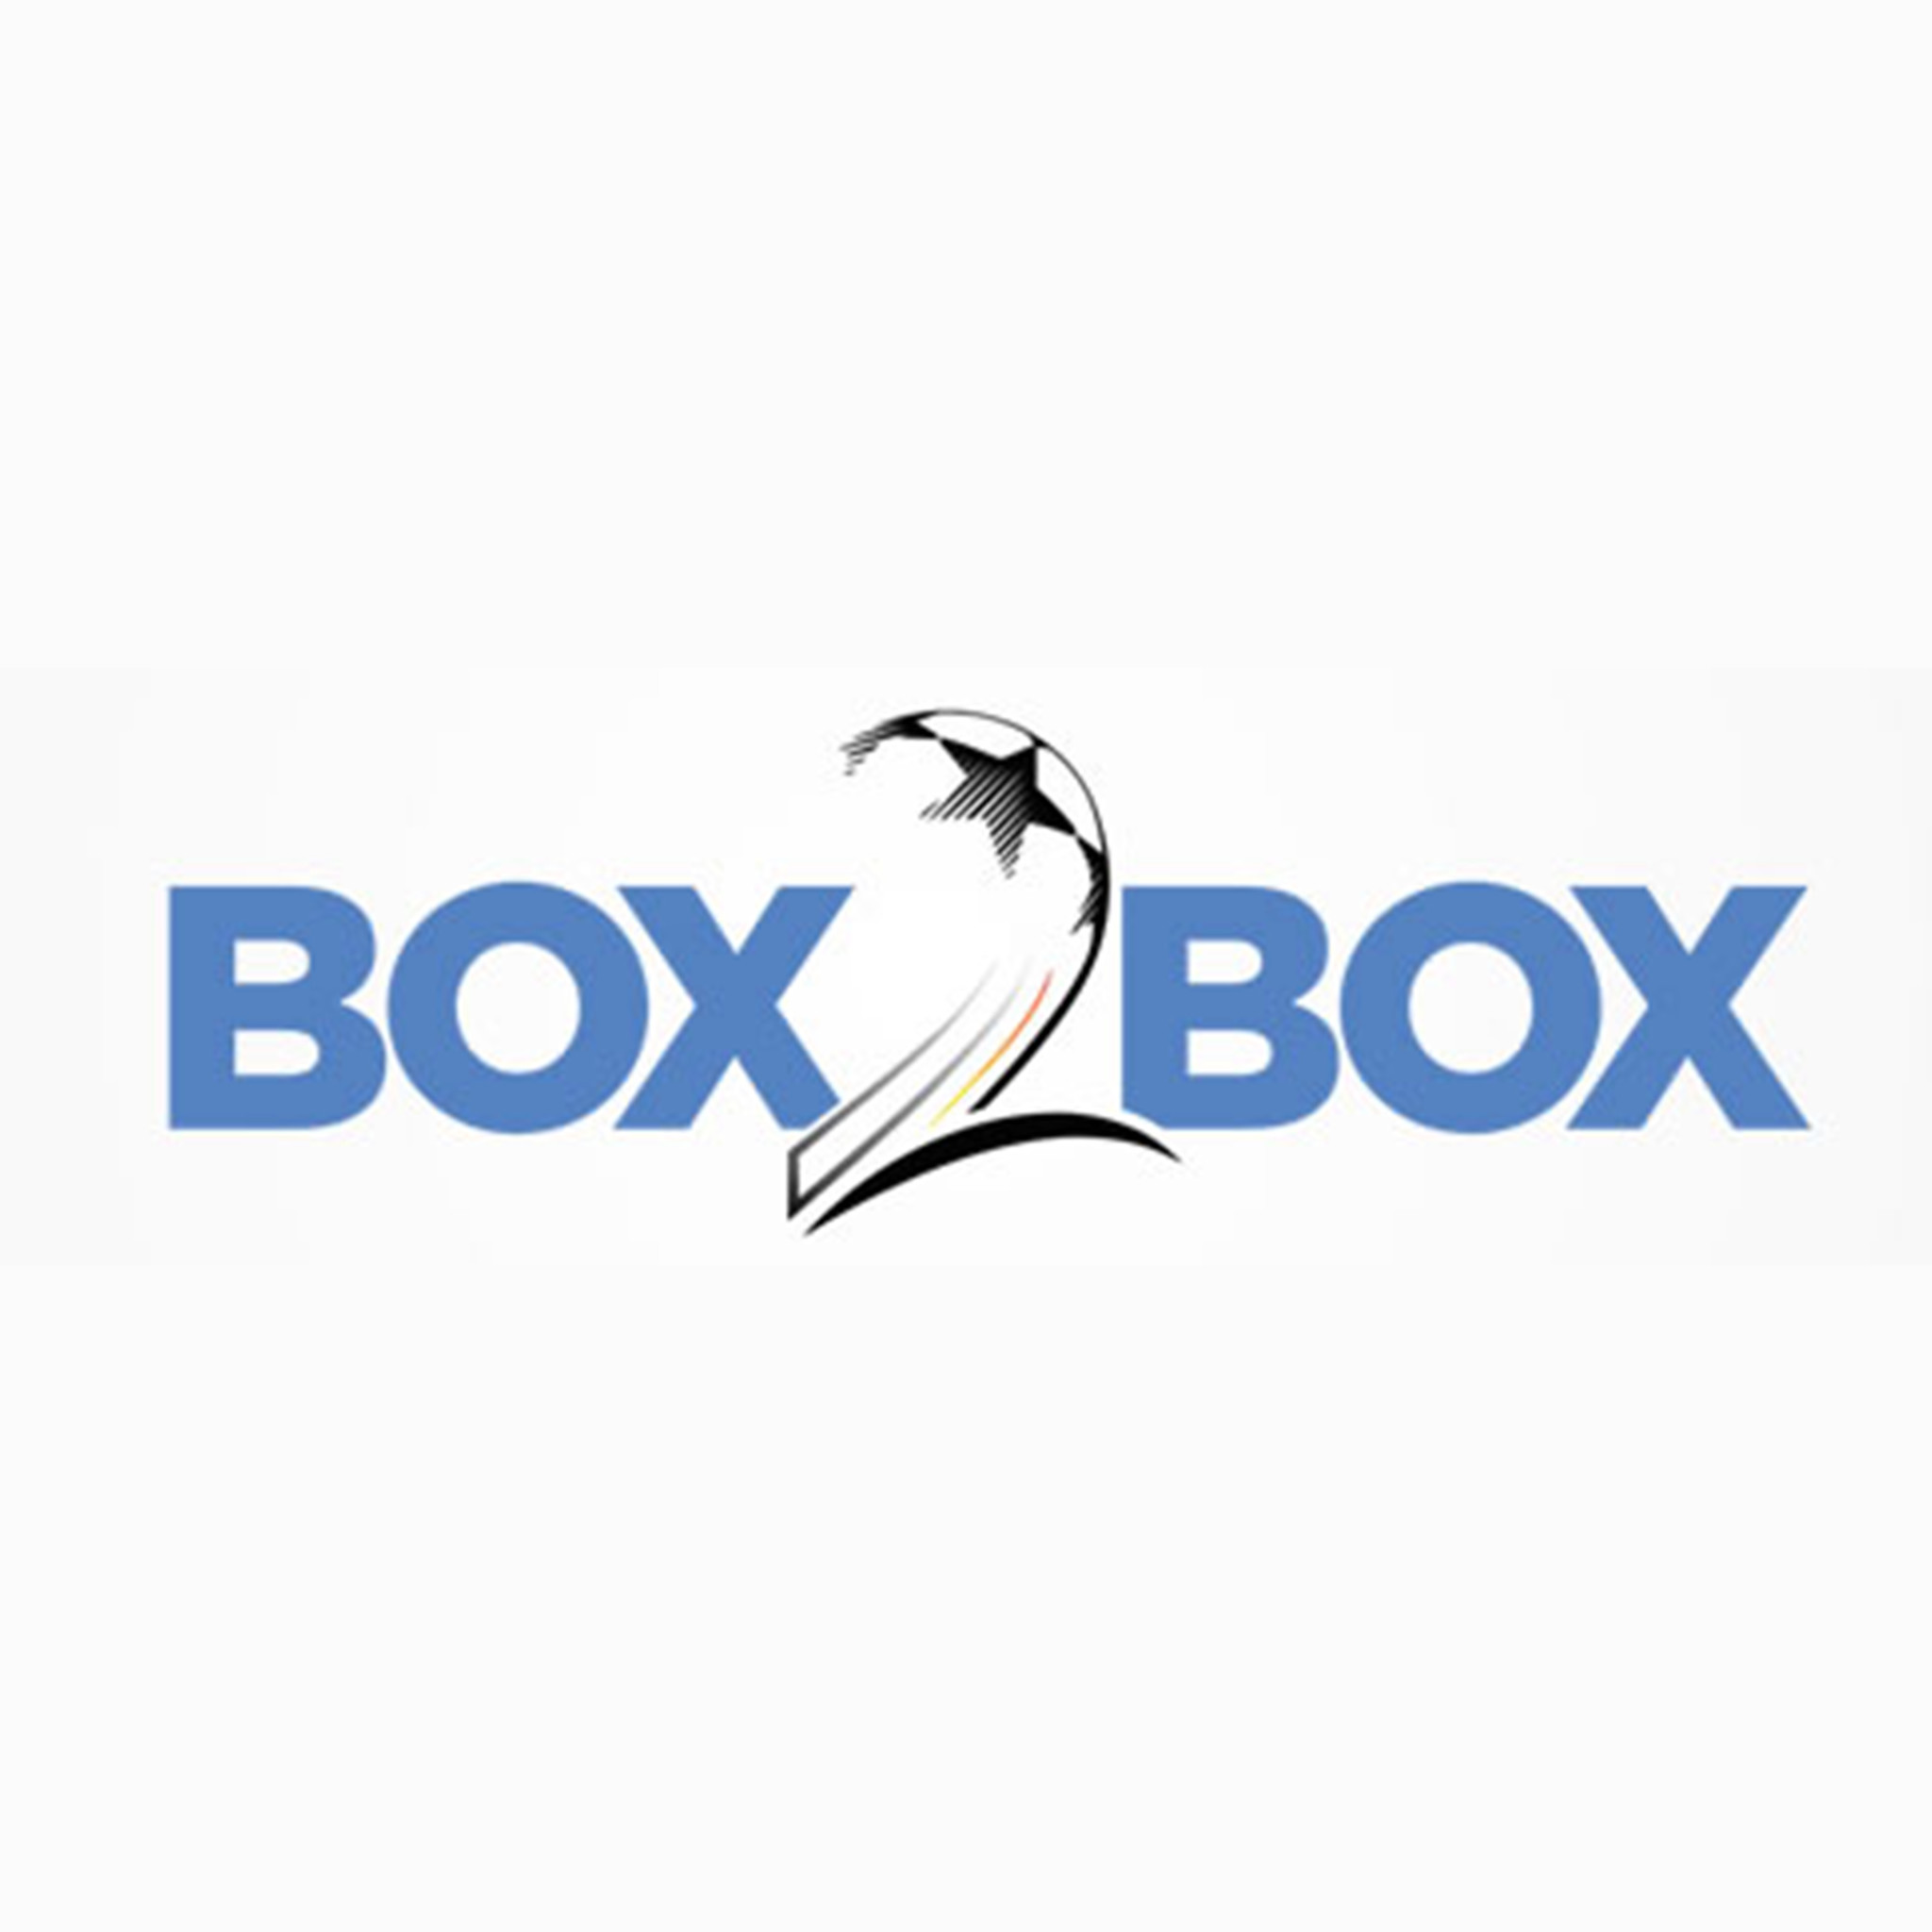 Melissa Barbieri on Box2Box Part 2